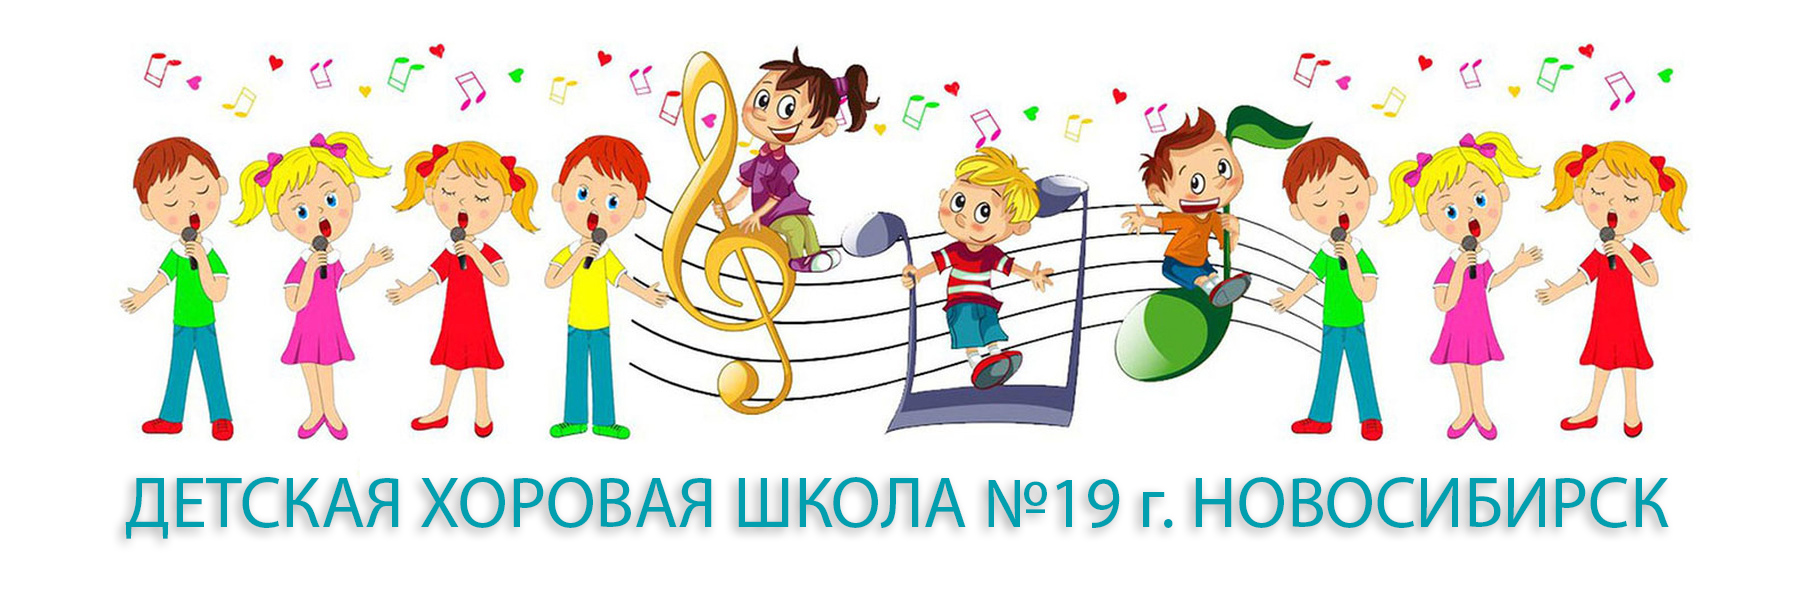 Детская хоровая школа №19 г. Новосибирск